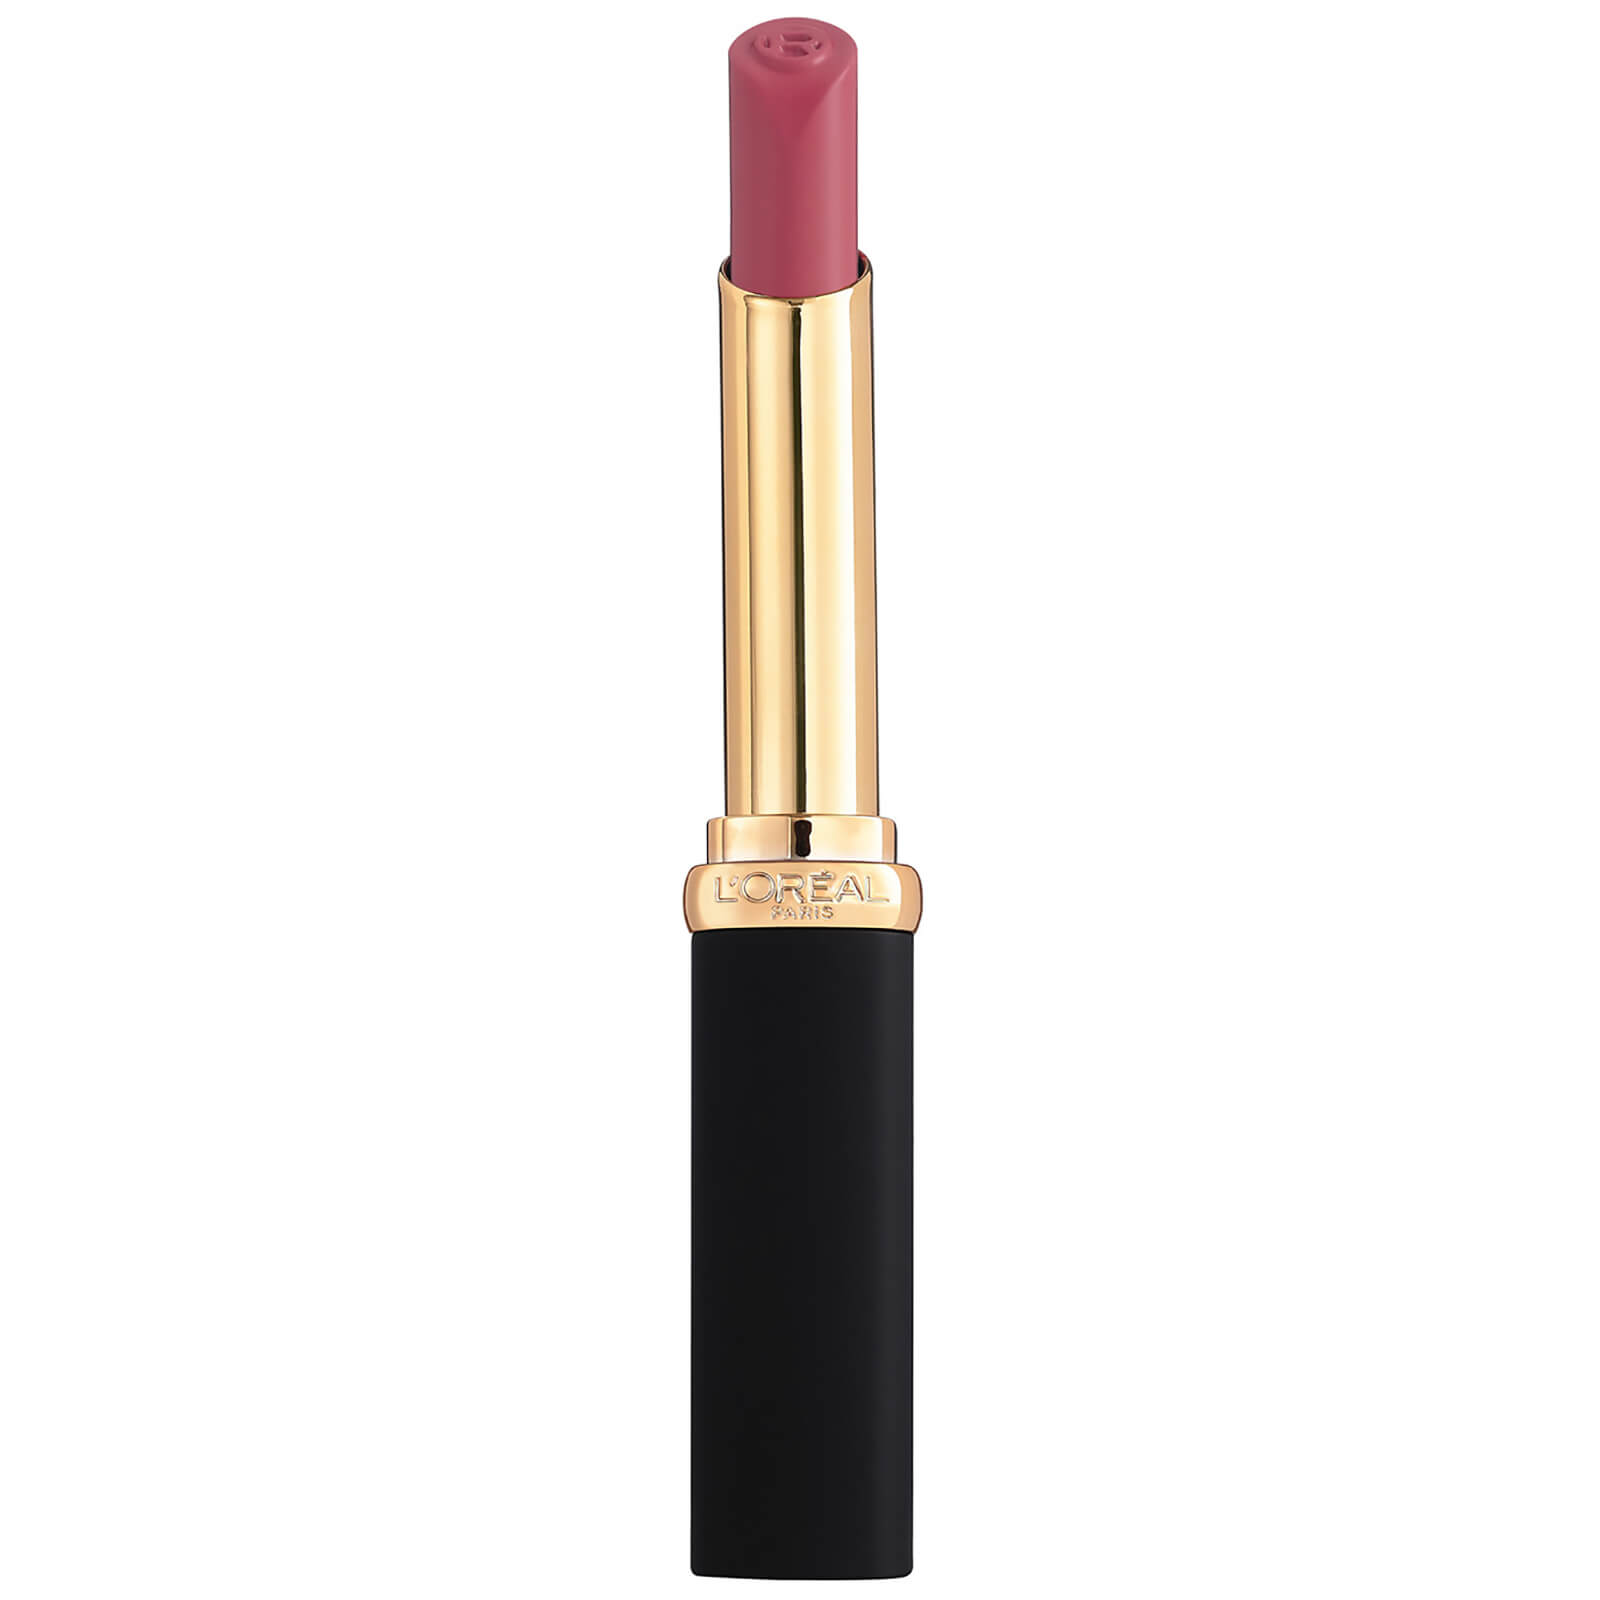 L'Oreal Paris Colour Riche Intense Volume Matte Lipstick 25g (Various Shades) - Mauve Indomptable